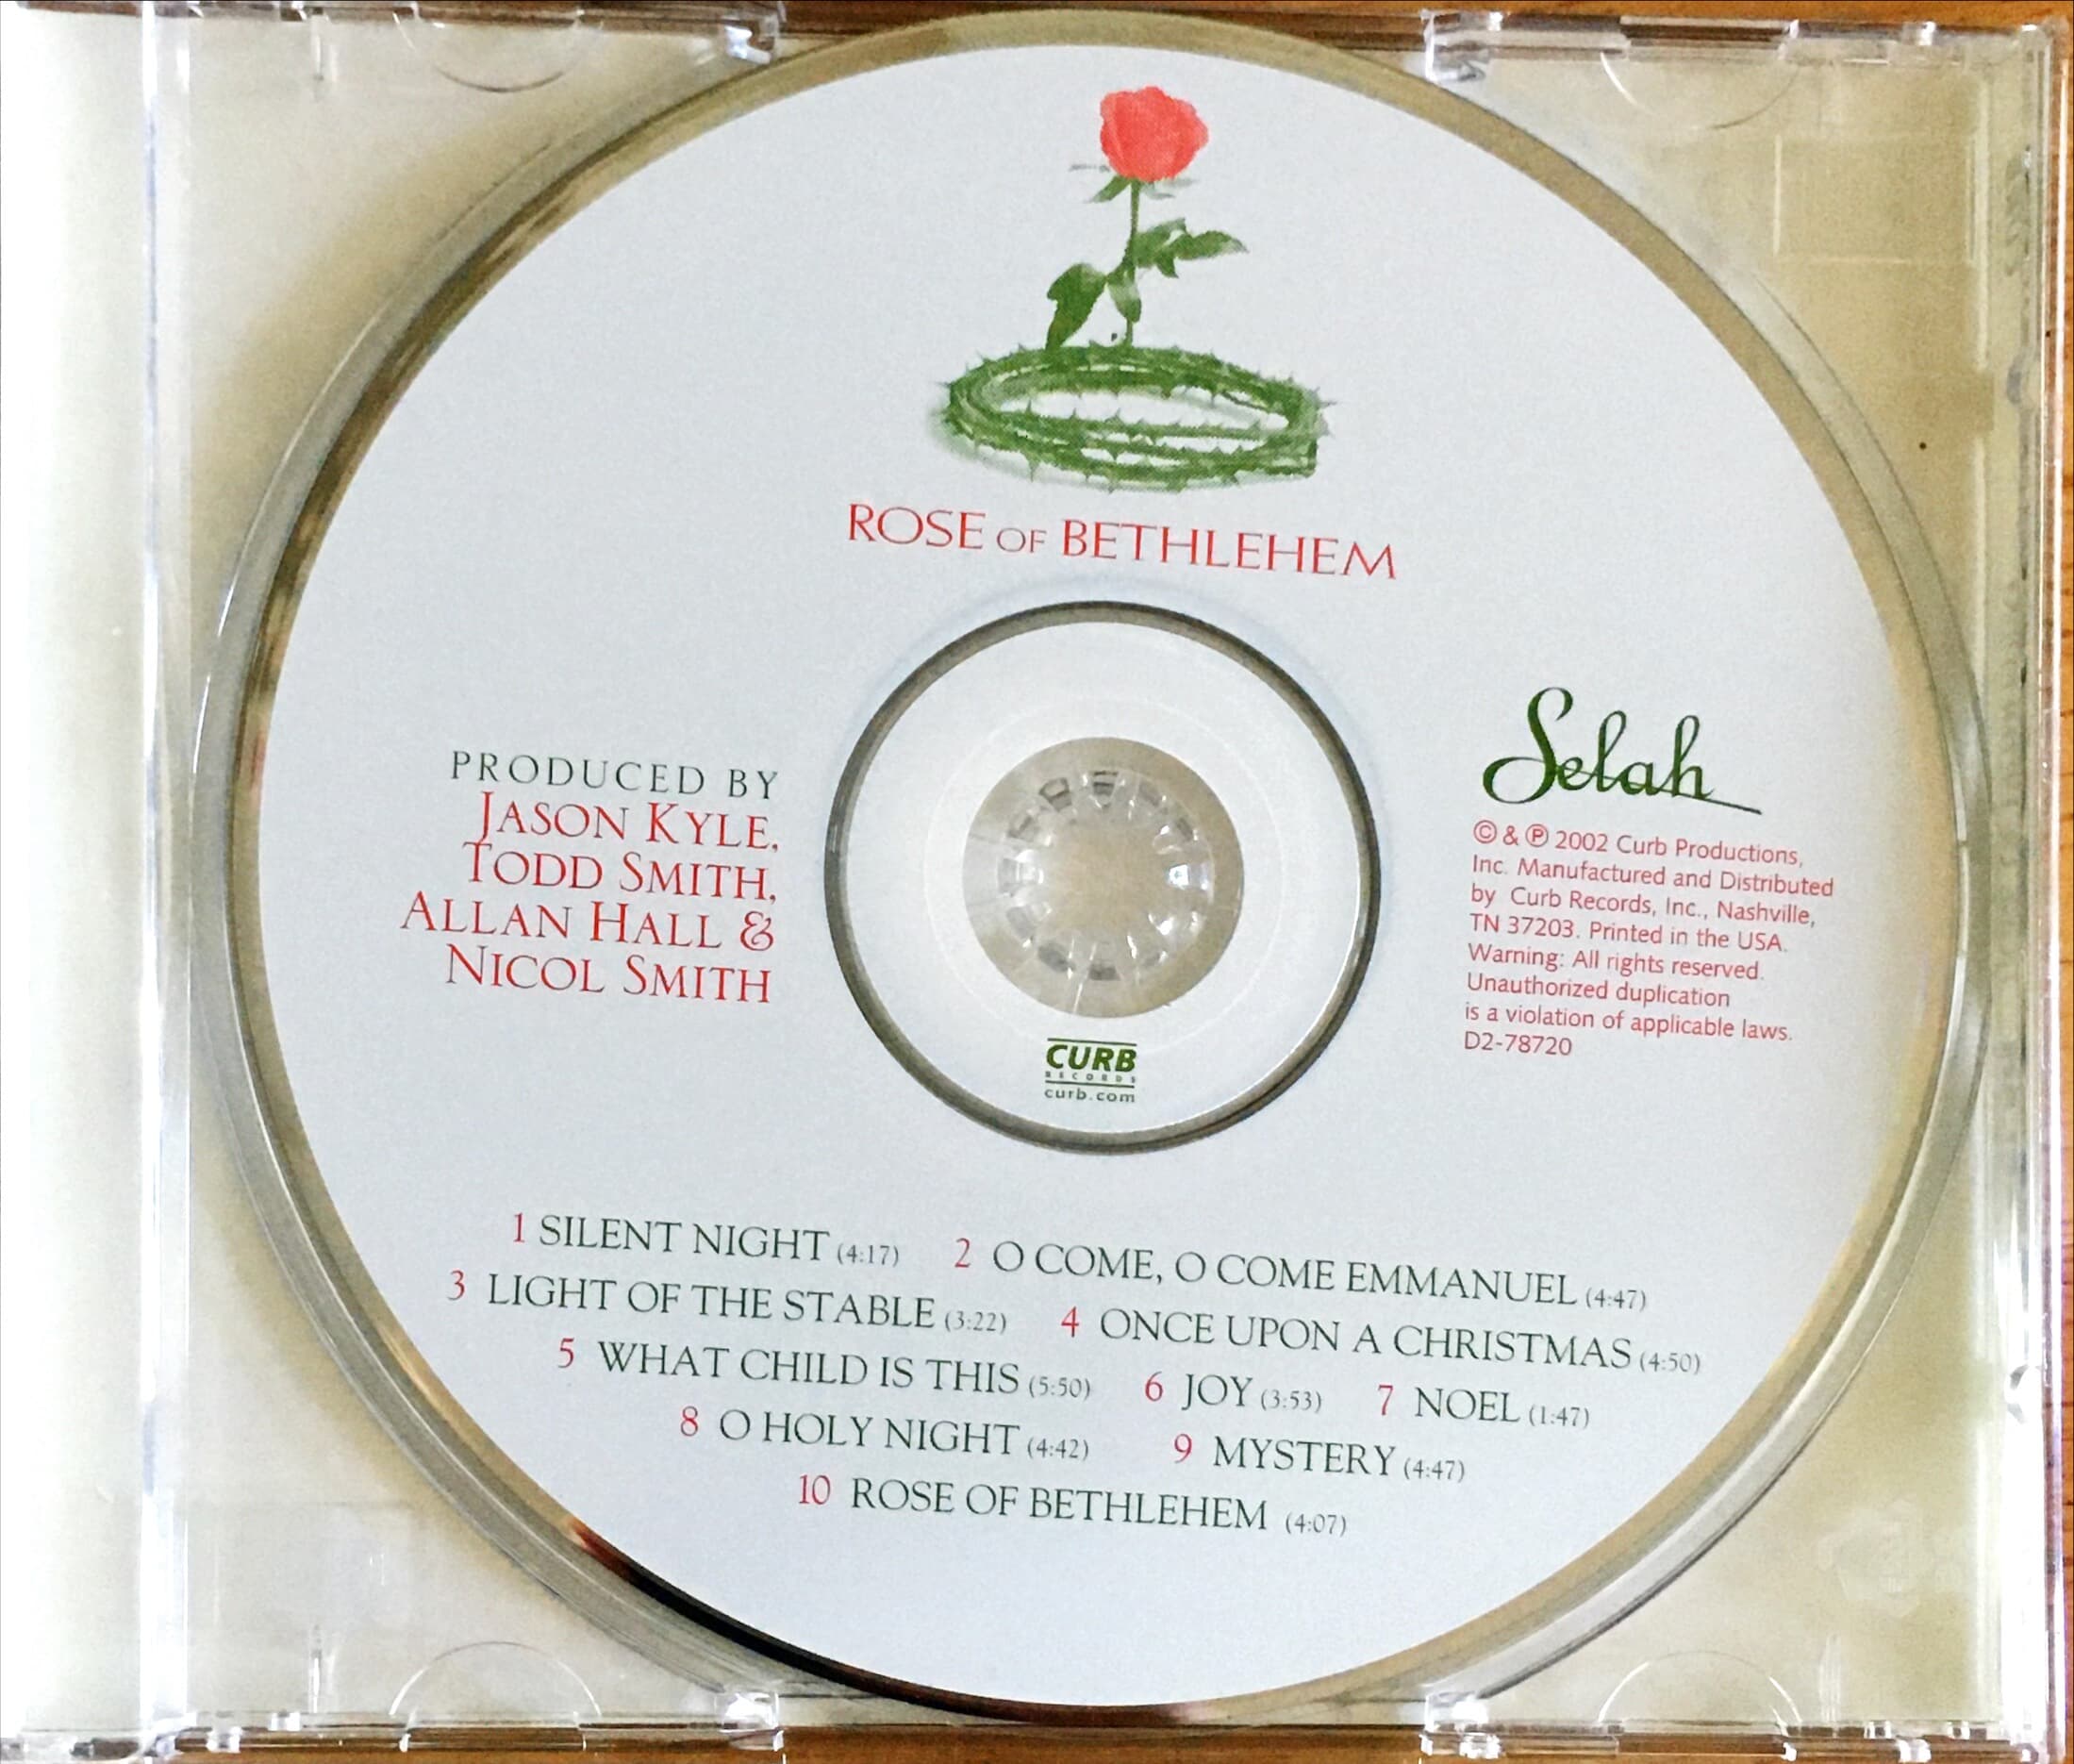 Selah - Rose Of Bethlehem (Deluxe Edition)(CD)